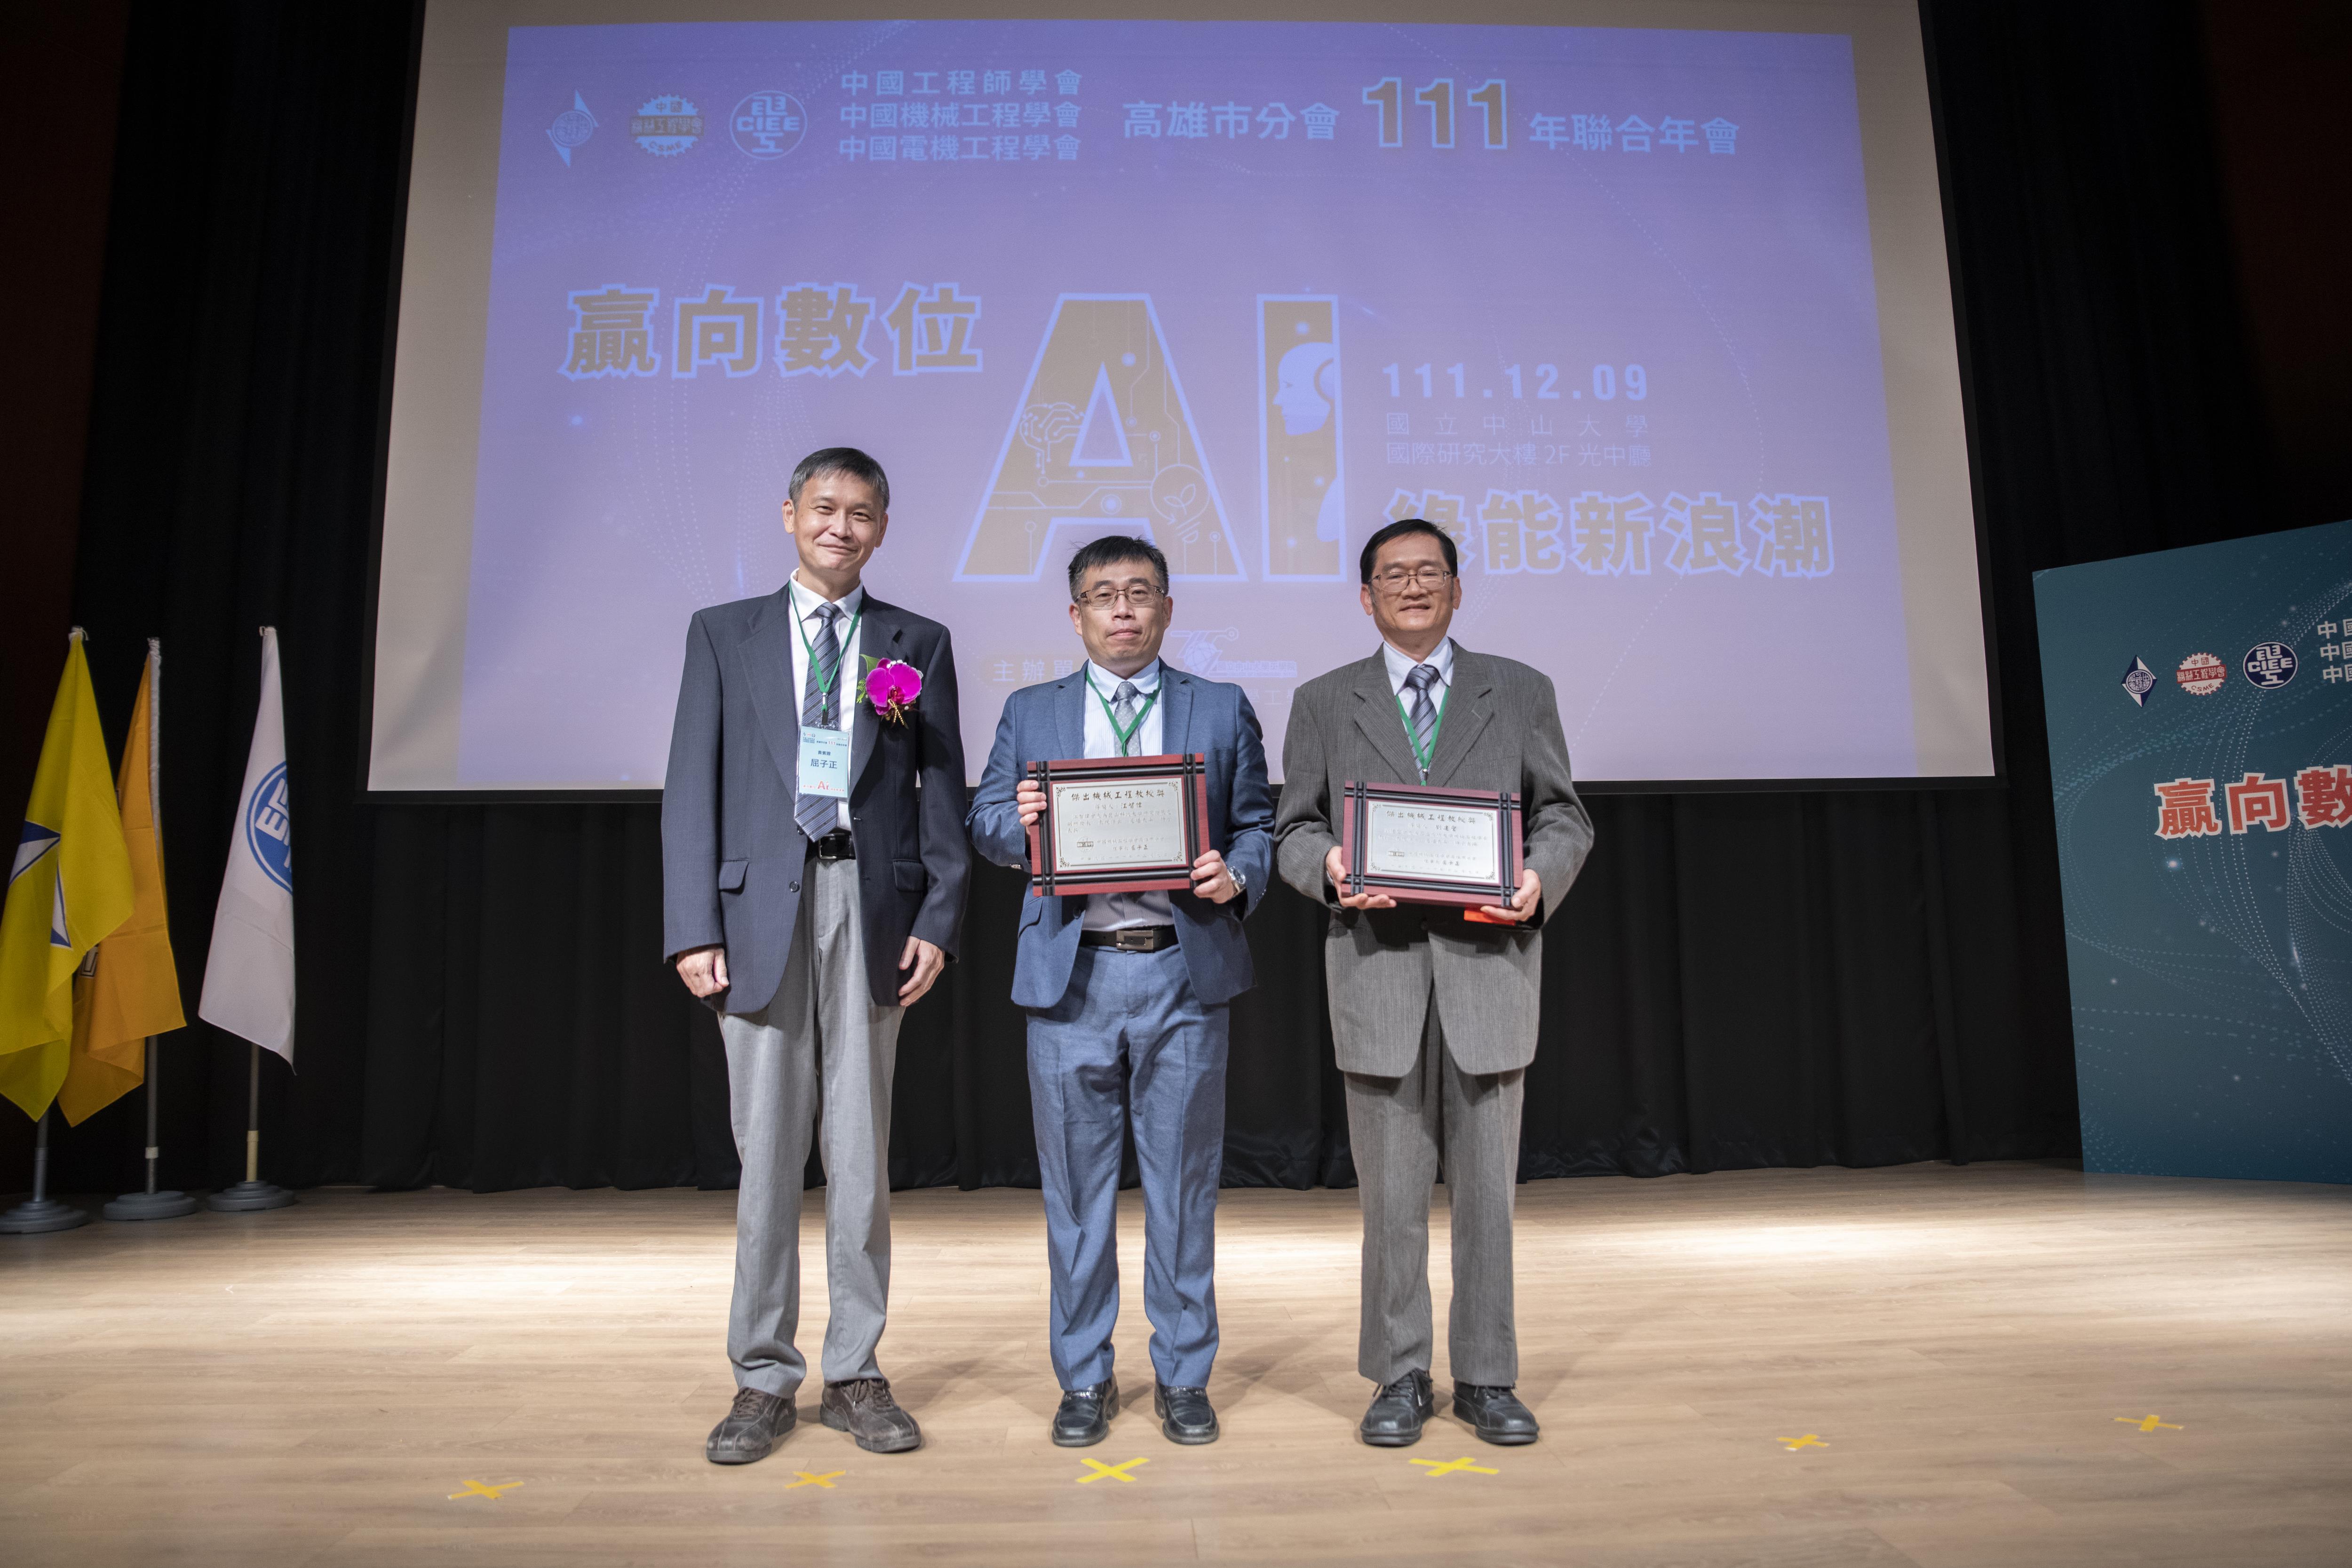 學術貢獻卓越 崑大江智偉教授獲頒「傑出機械工程教授獎」